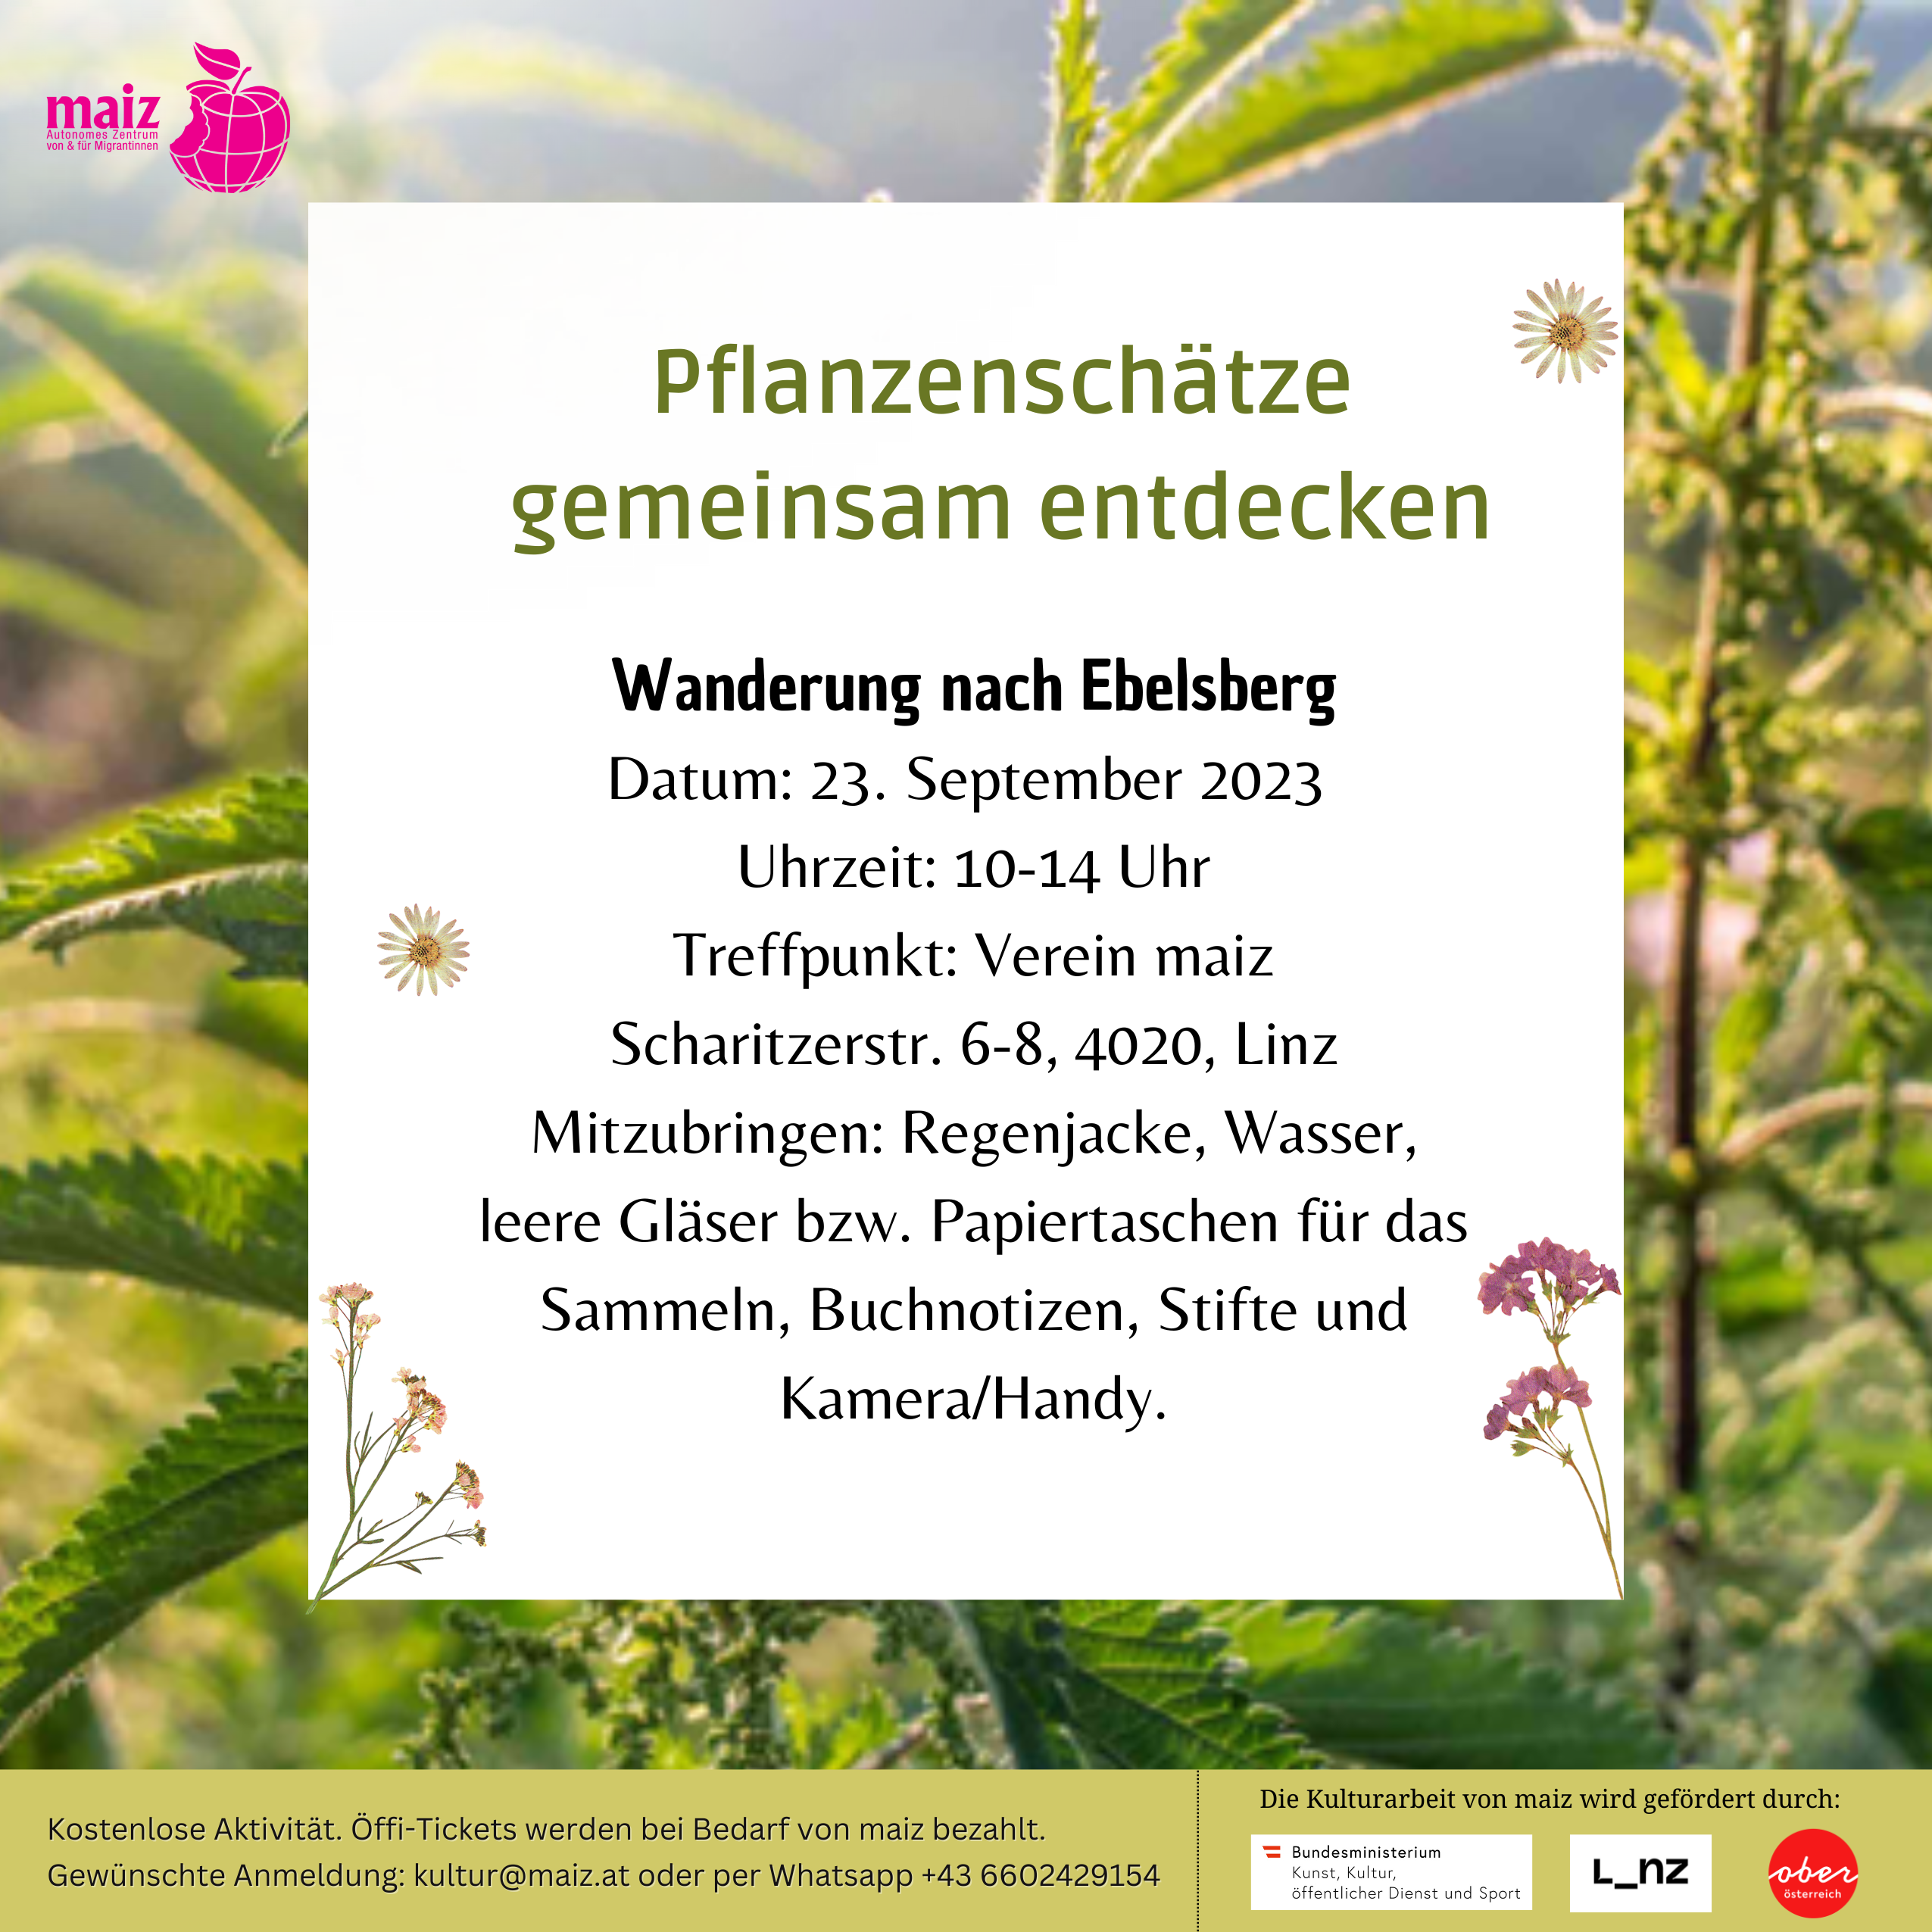 Flyer mit Informationen von Workshop auf einem Hintergrund mit Blättern